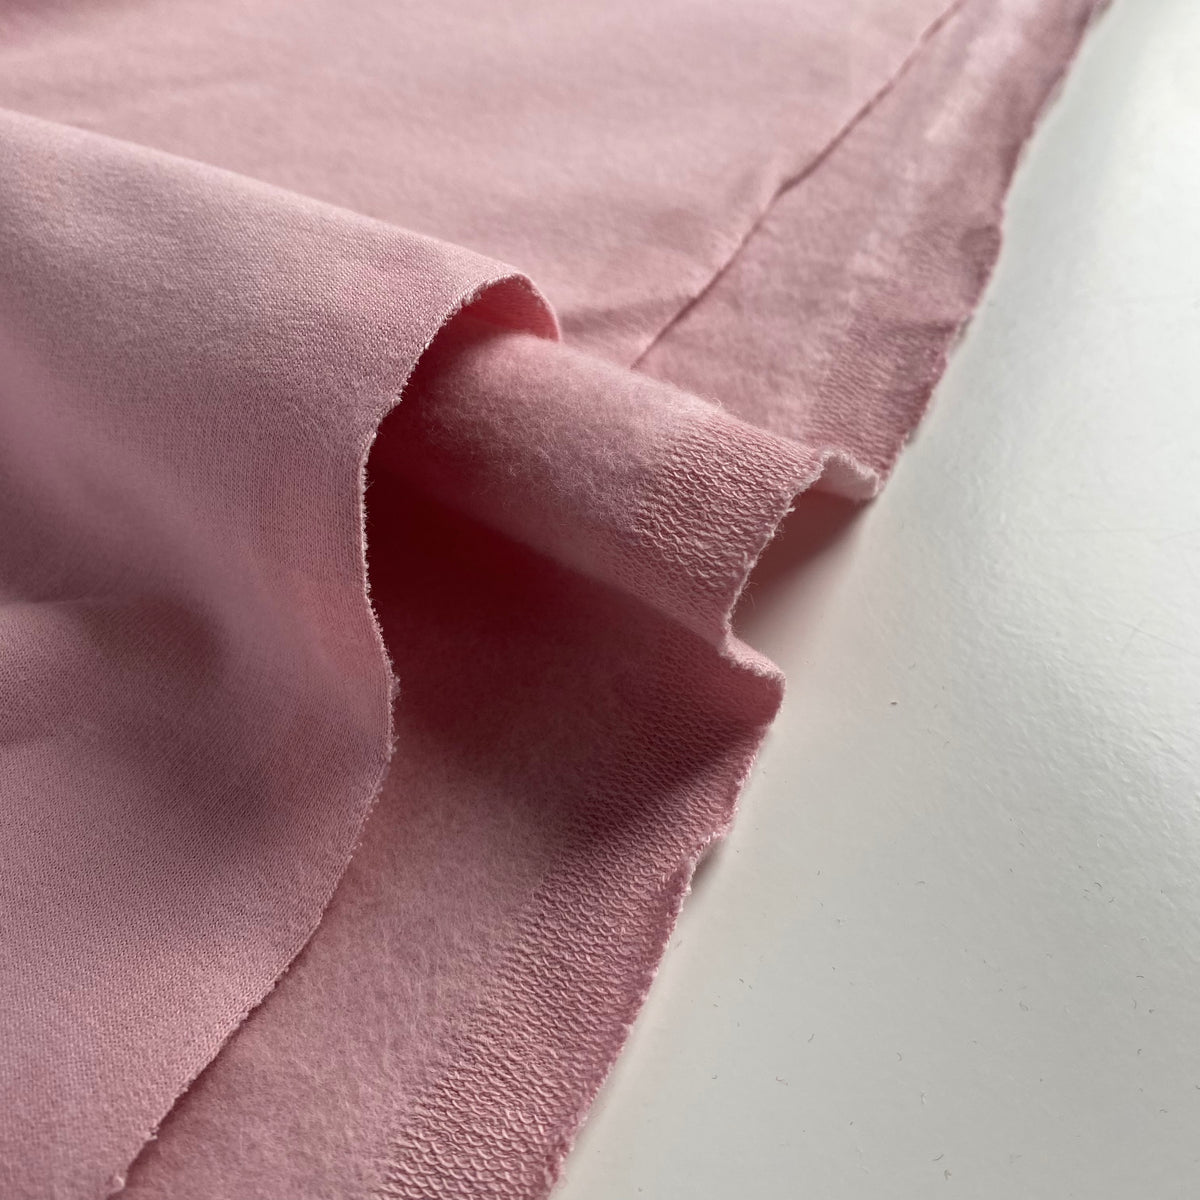 Organic Soft Sweat Jersey Knit Fabric - Blush -  0.5 metre